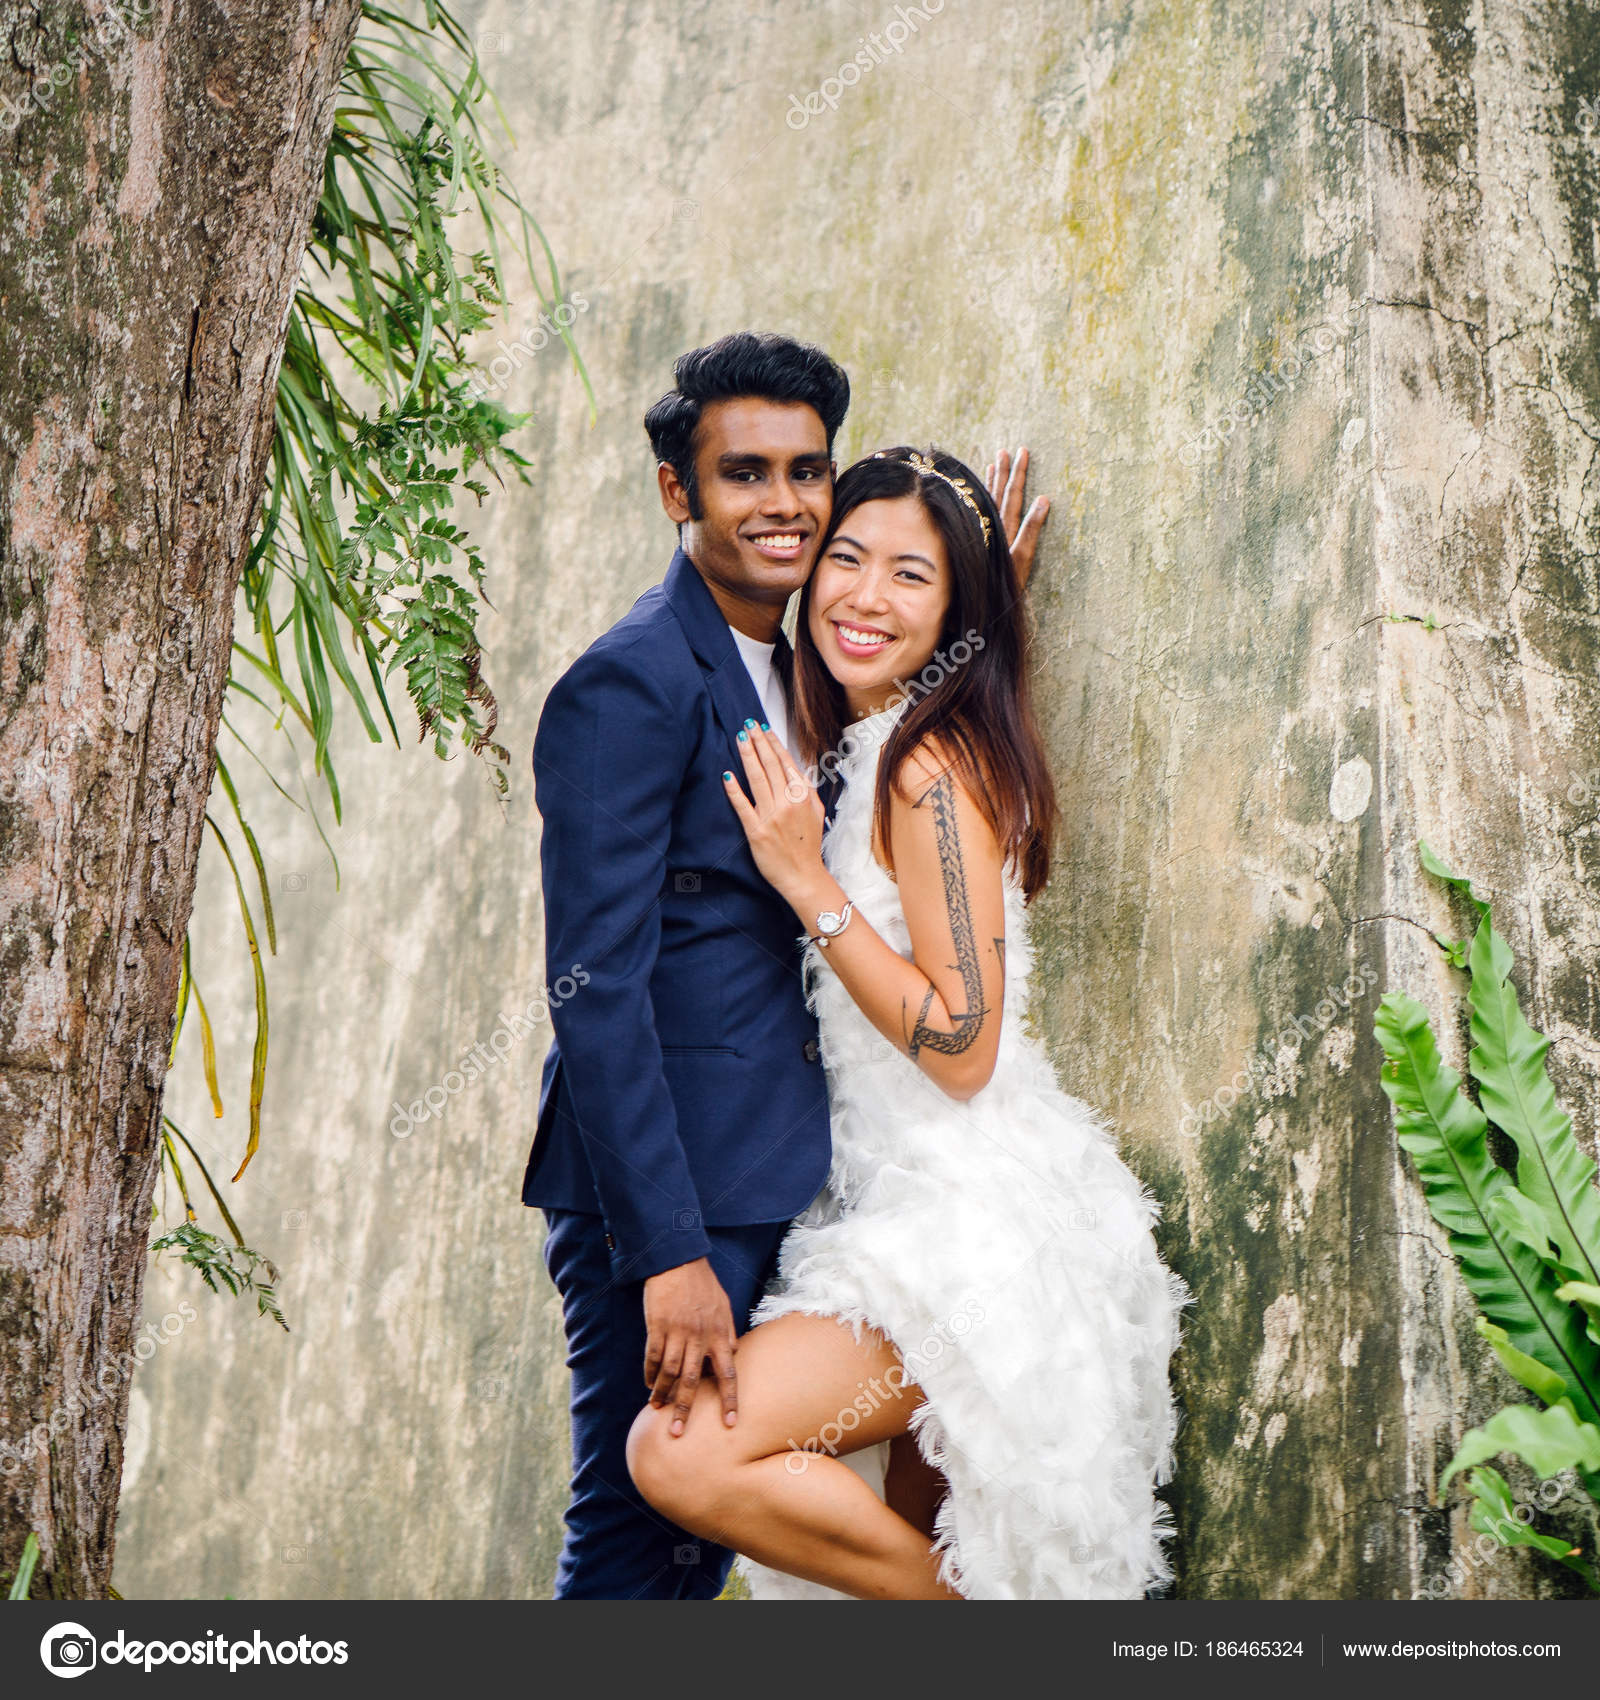 depositphotos_186465324-stock-photo-engaged-interracial-couple-indian-man.jpg